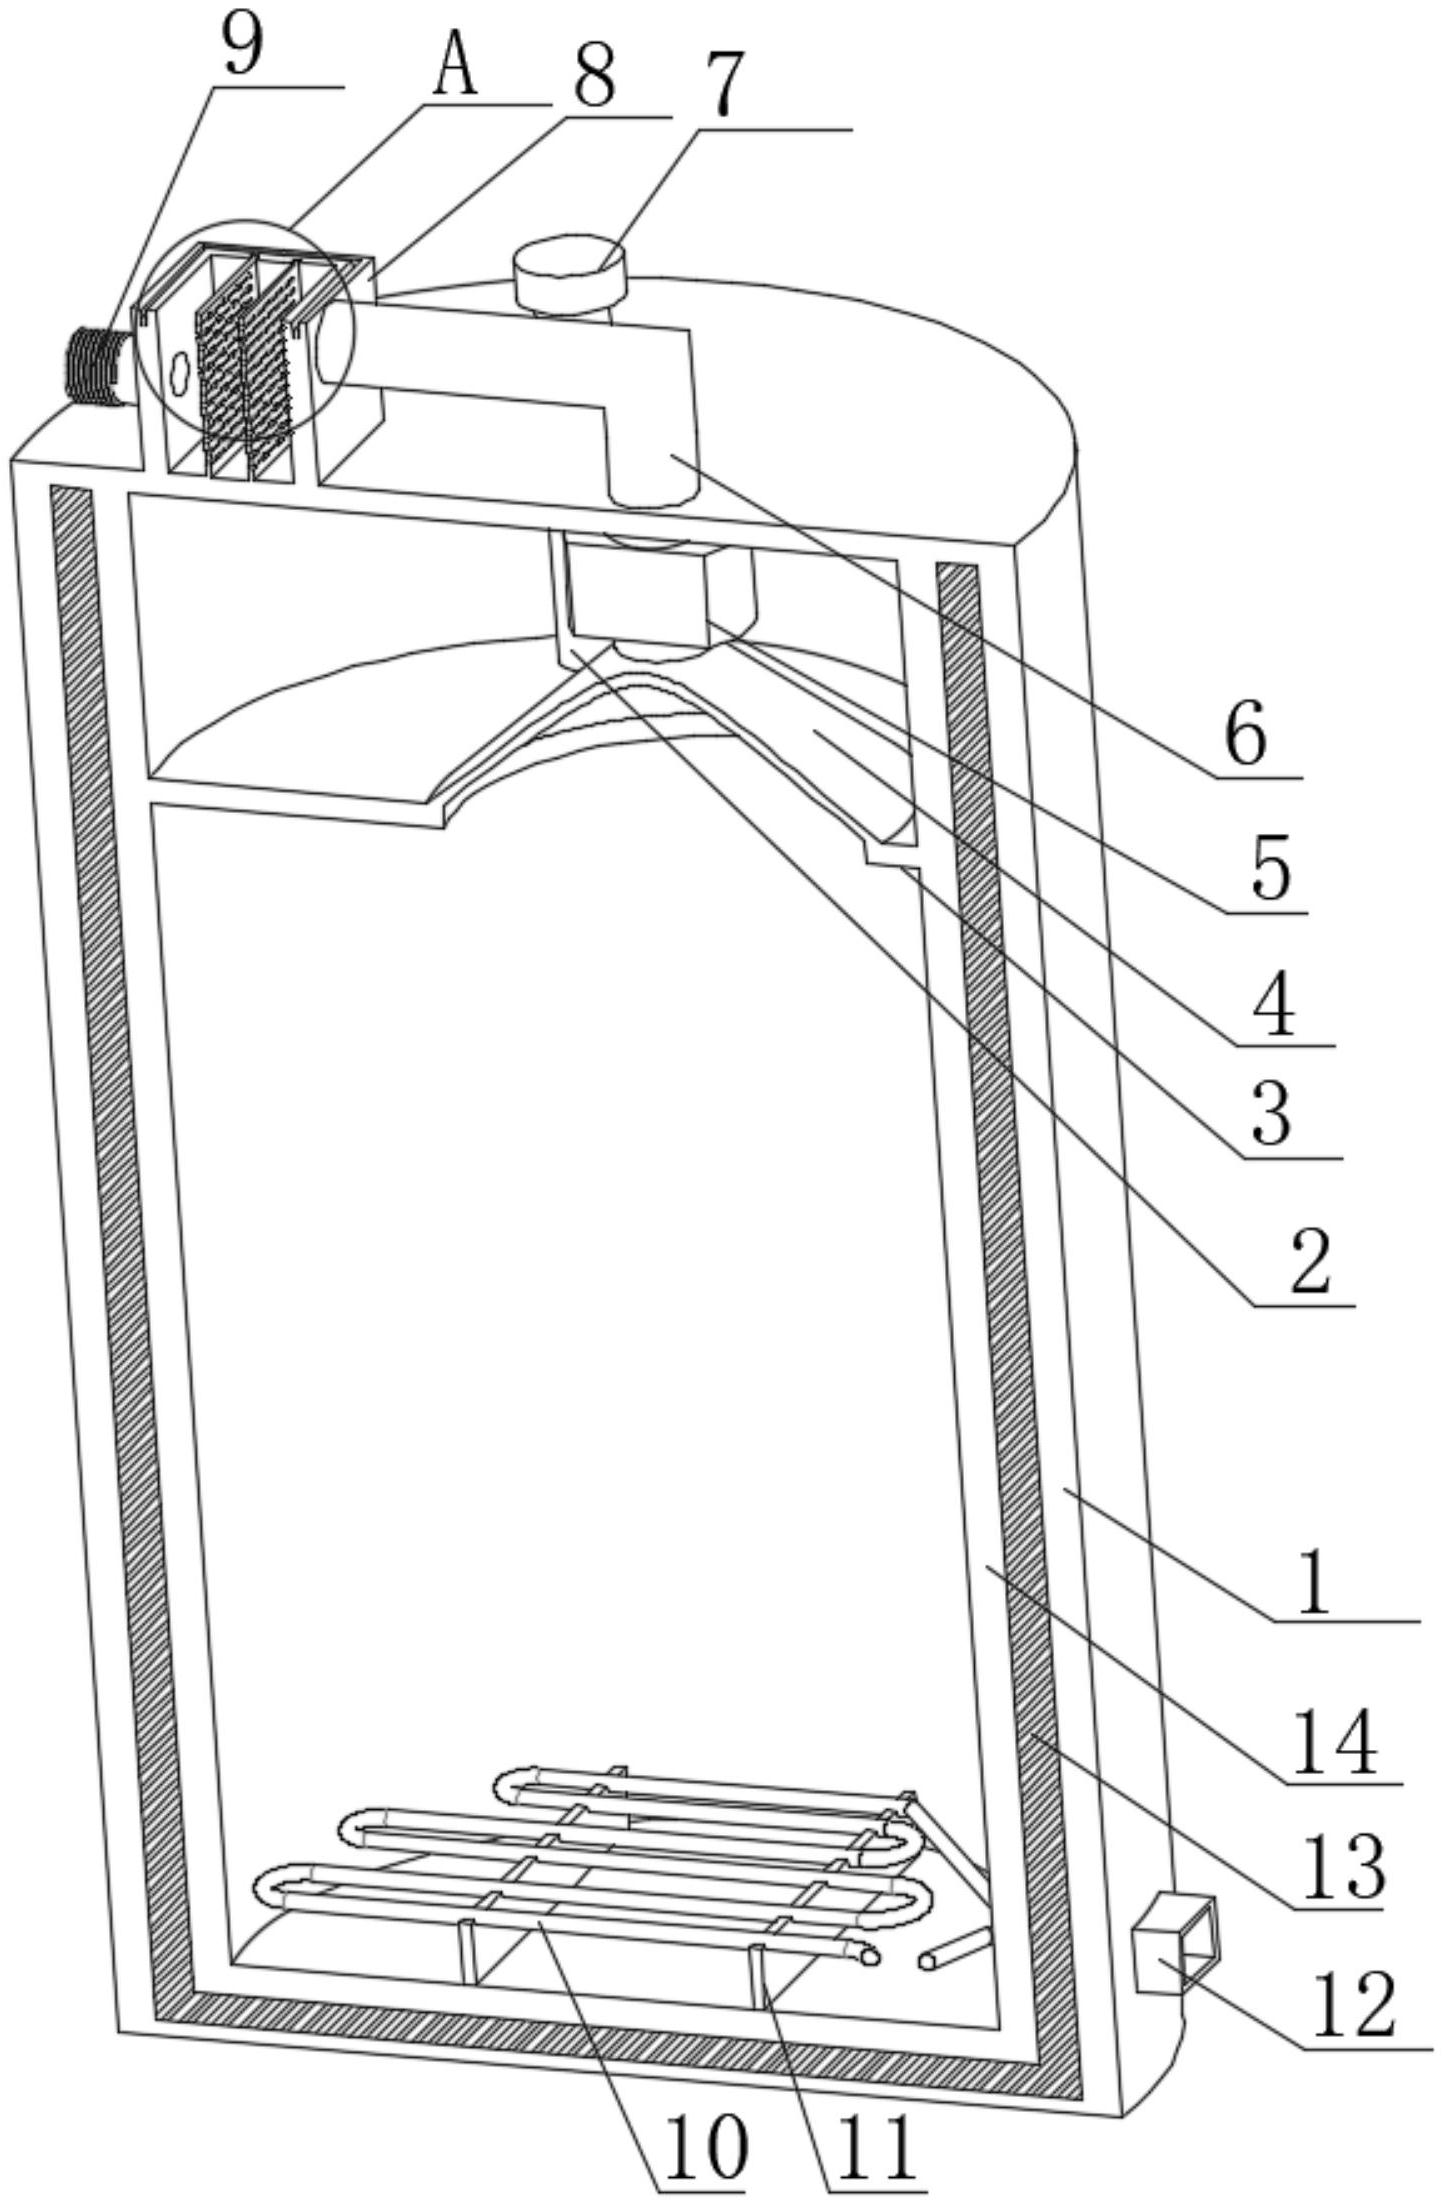 一种美容仪器用面部蒸汽机专利图